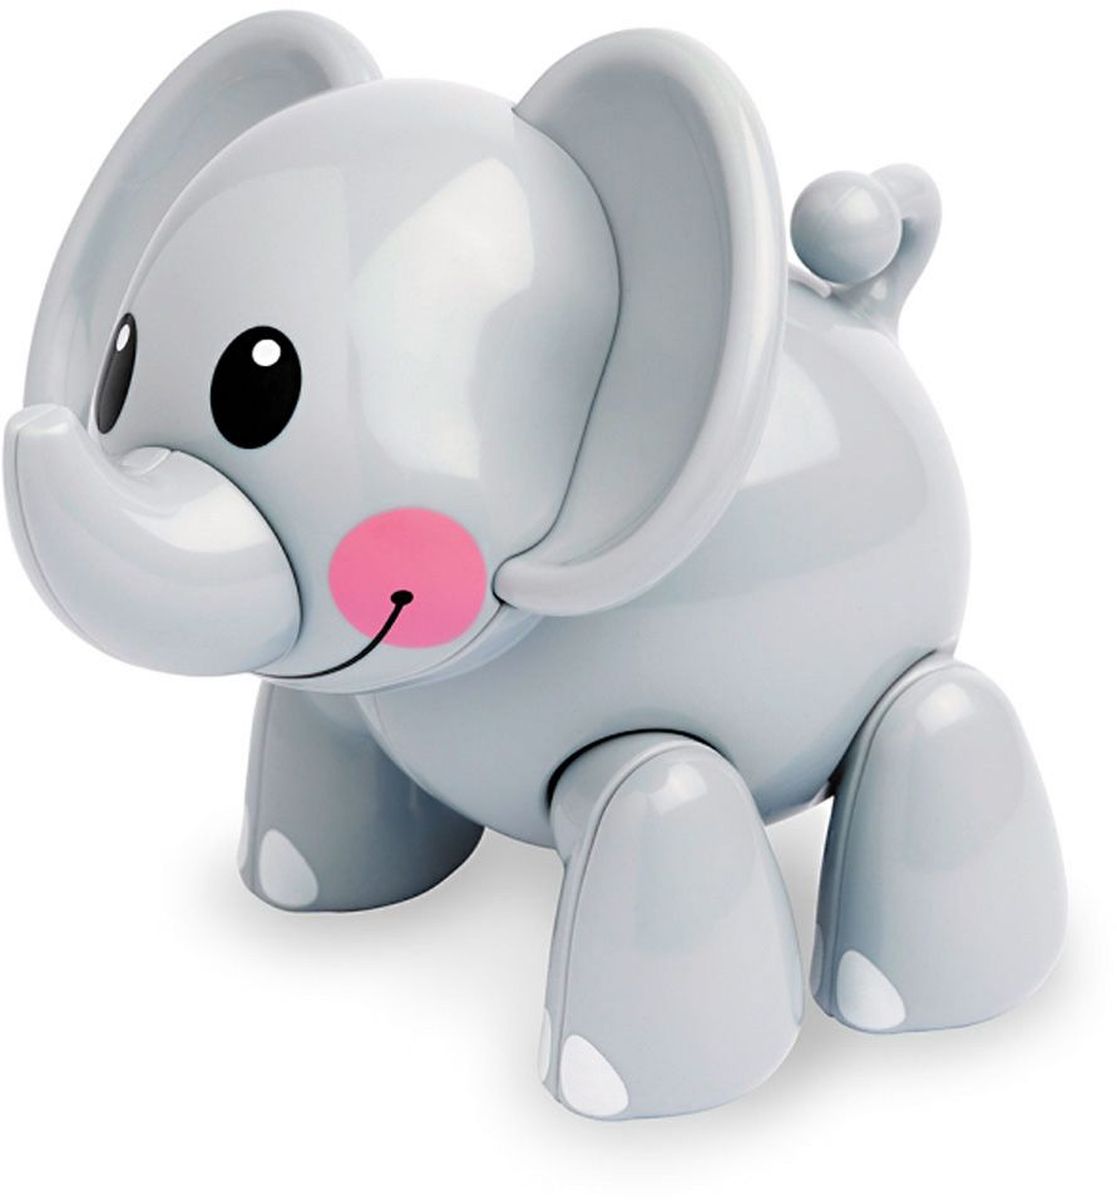 Ути-Пути Развивающая игрушка Слон цвет серый